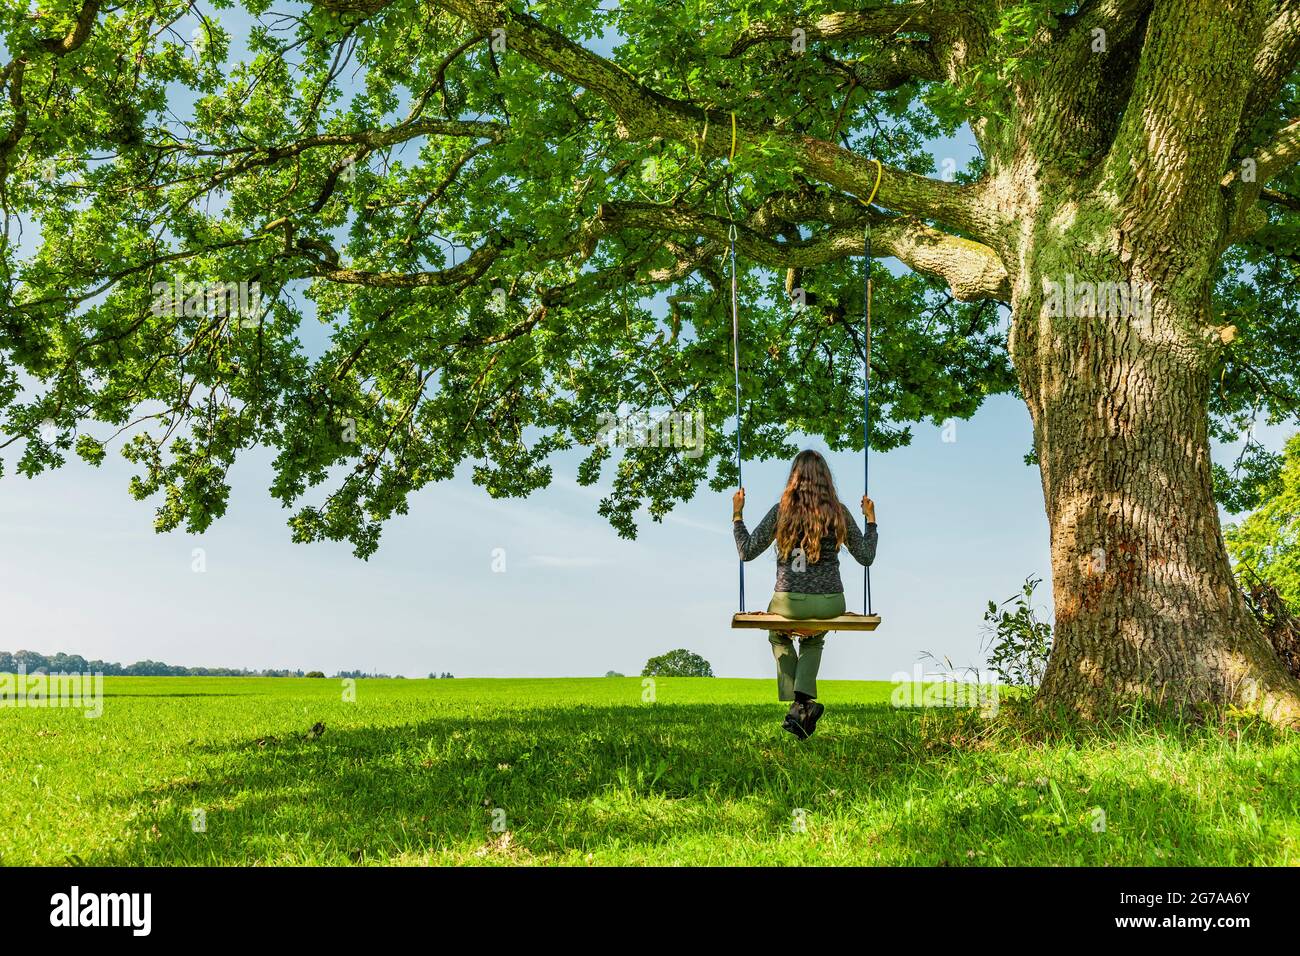 Woman on a swing by an oak tree Stock Photo